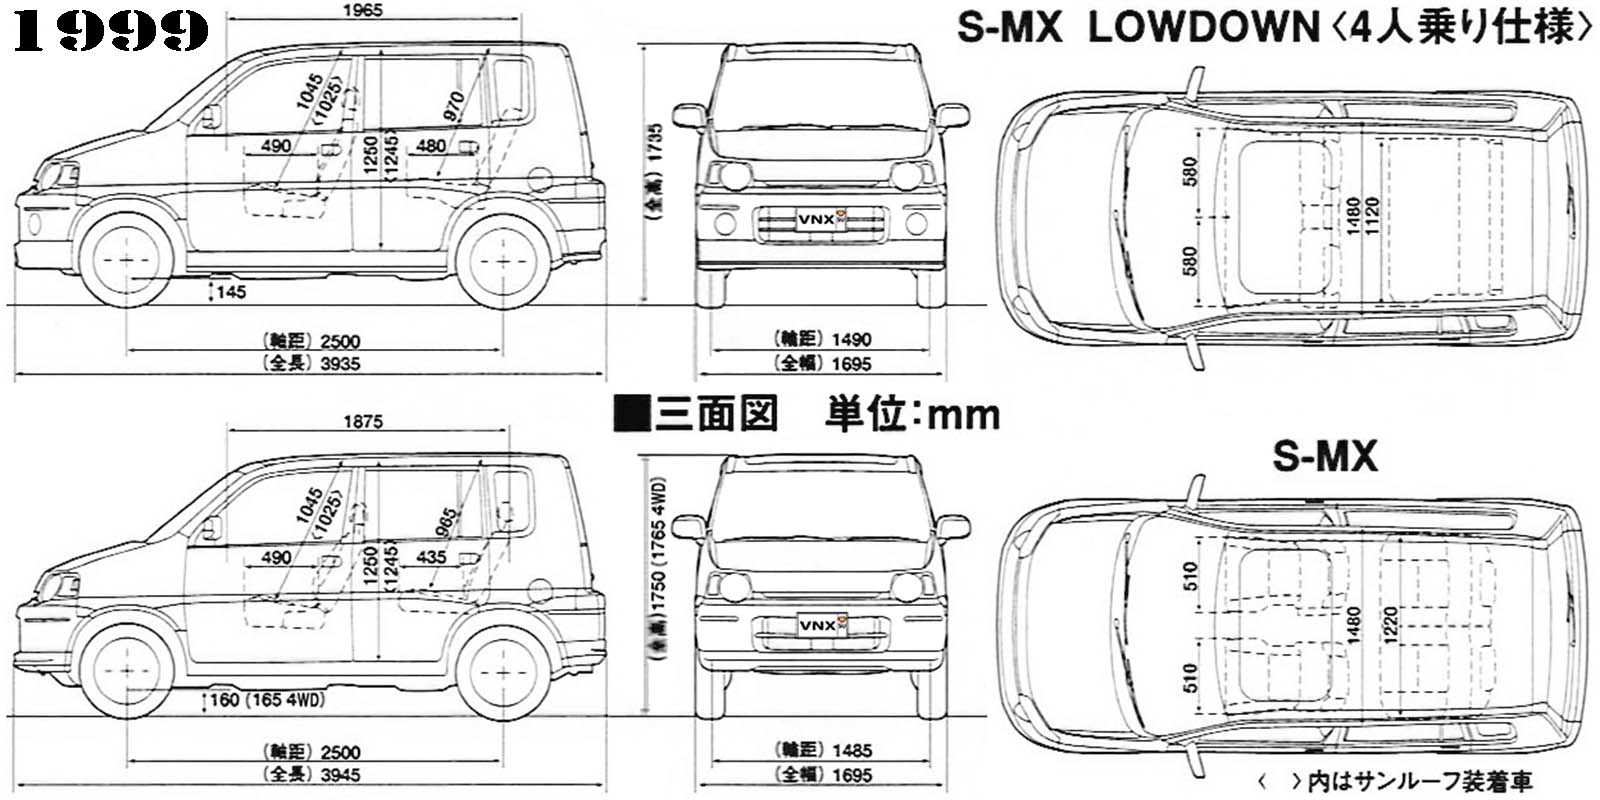 Габаритные размеры Хонда Эс-ЭмИкс 1996-2002 (dimensions Honda S-MX mk1)